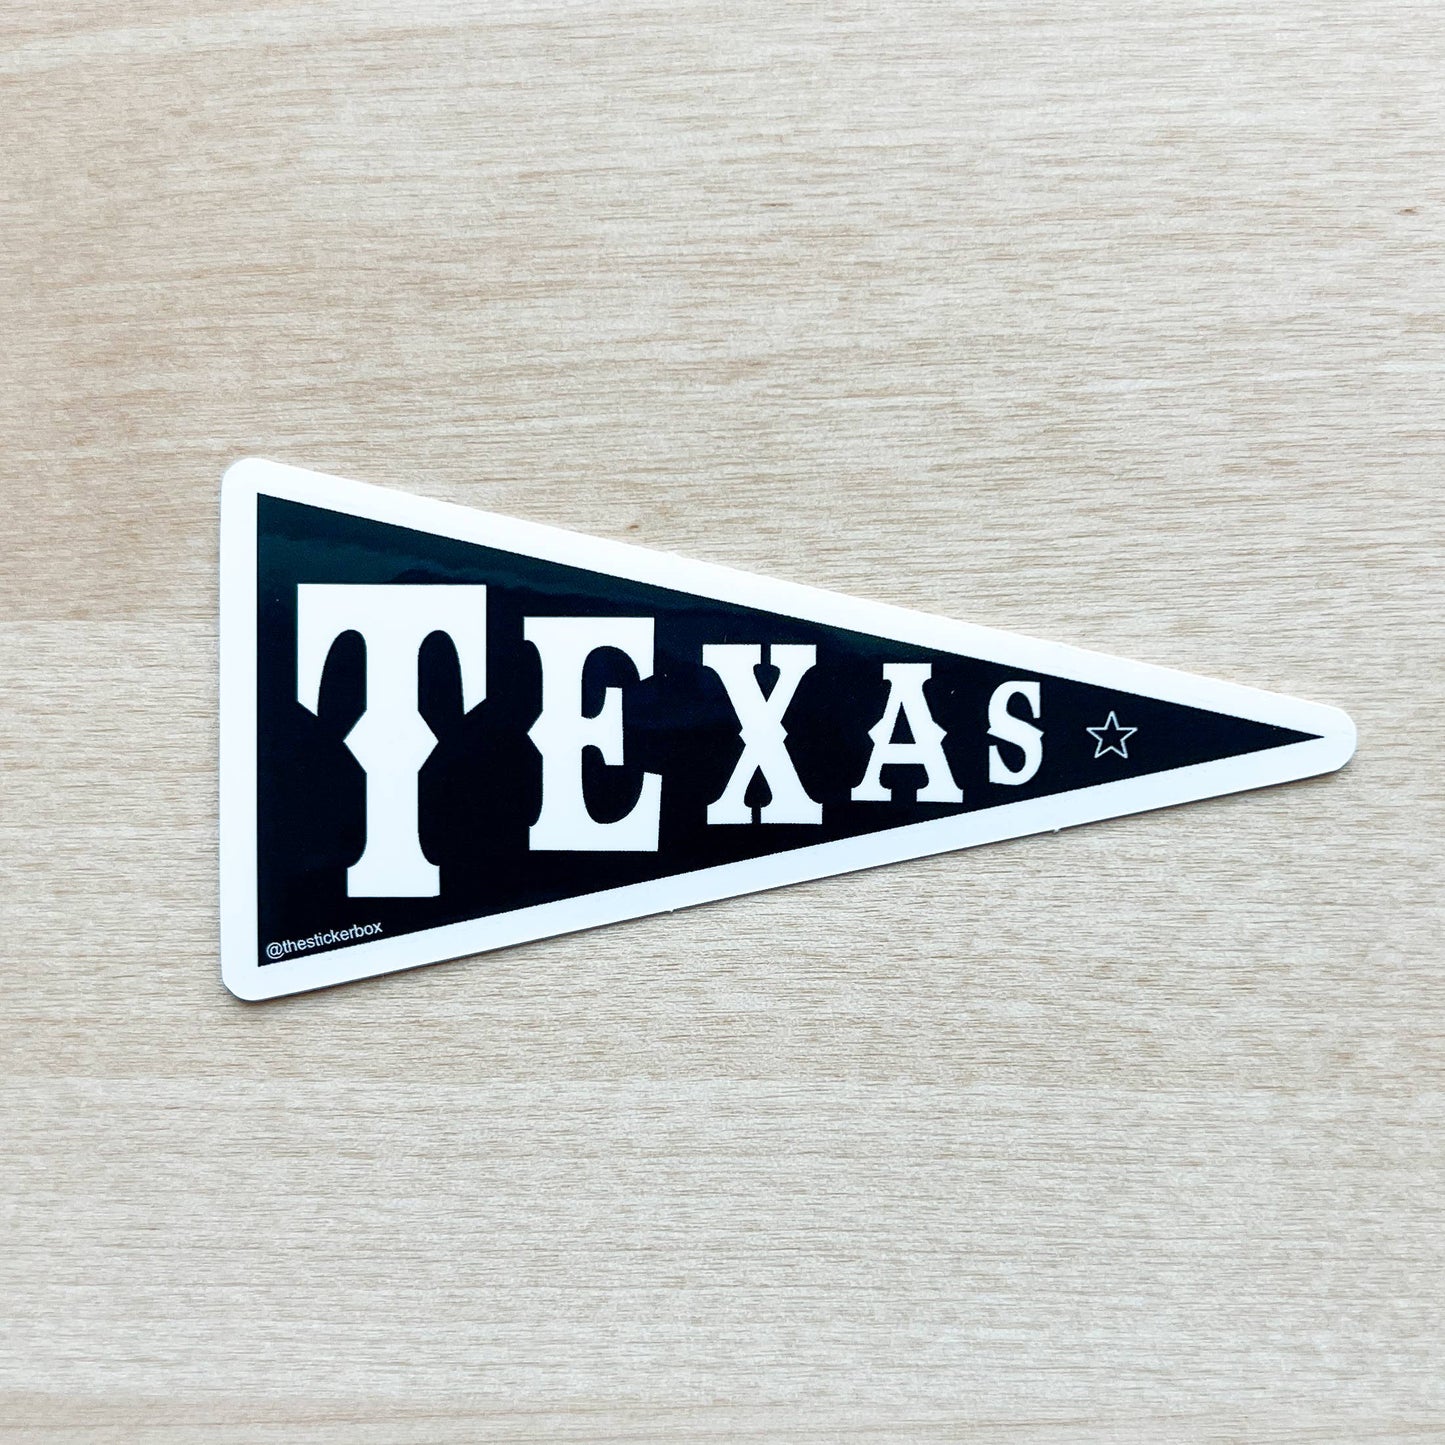 "Texas Banner" Sticker